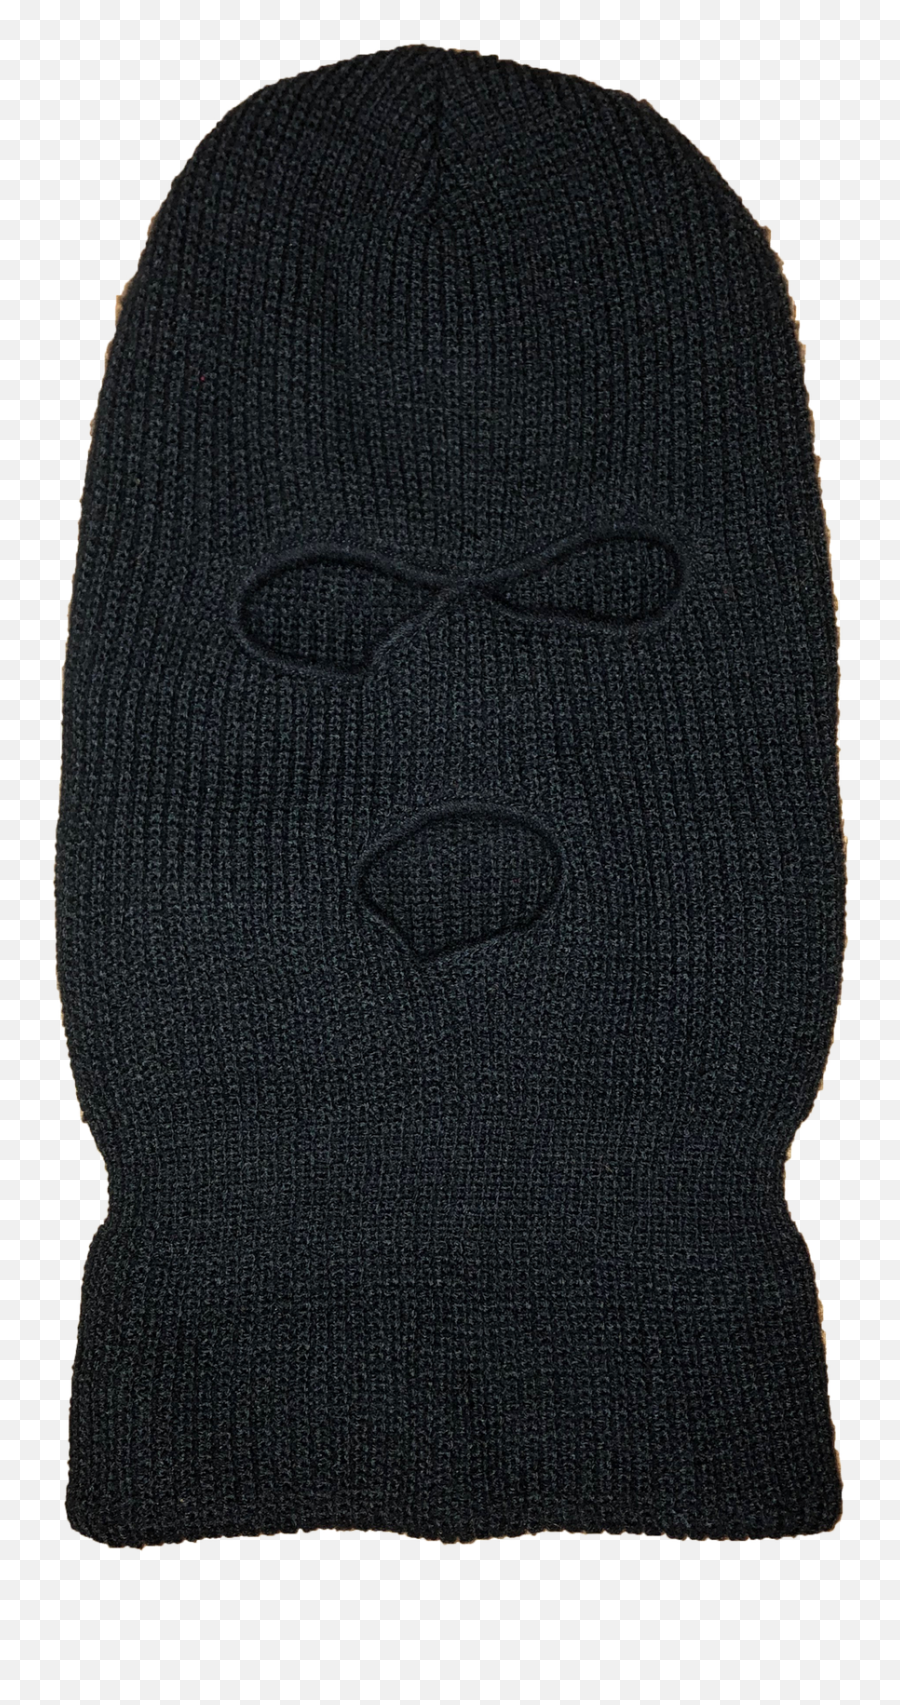 Erreur Cotton Candy Black Ski Mask - Toque Png,Ski Mask Transparent